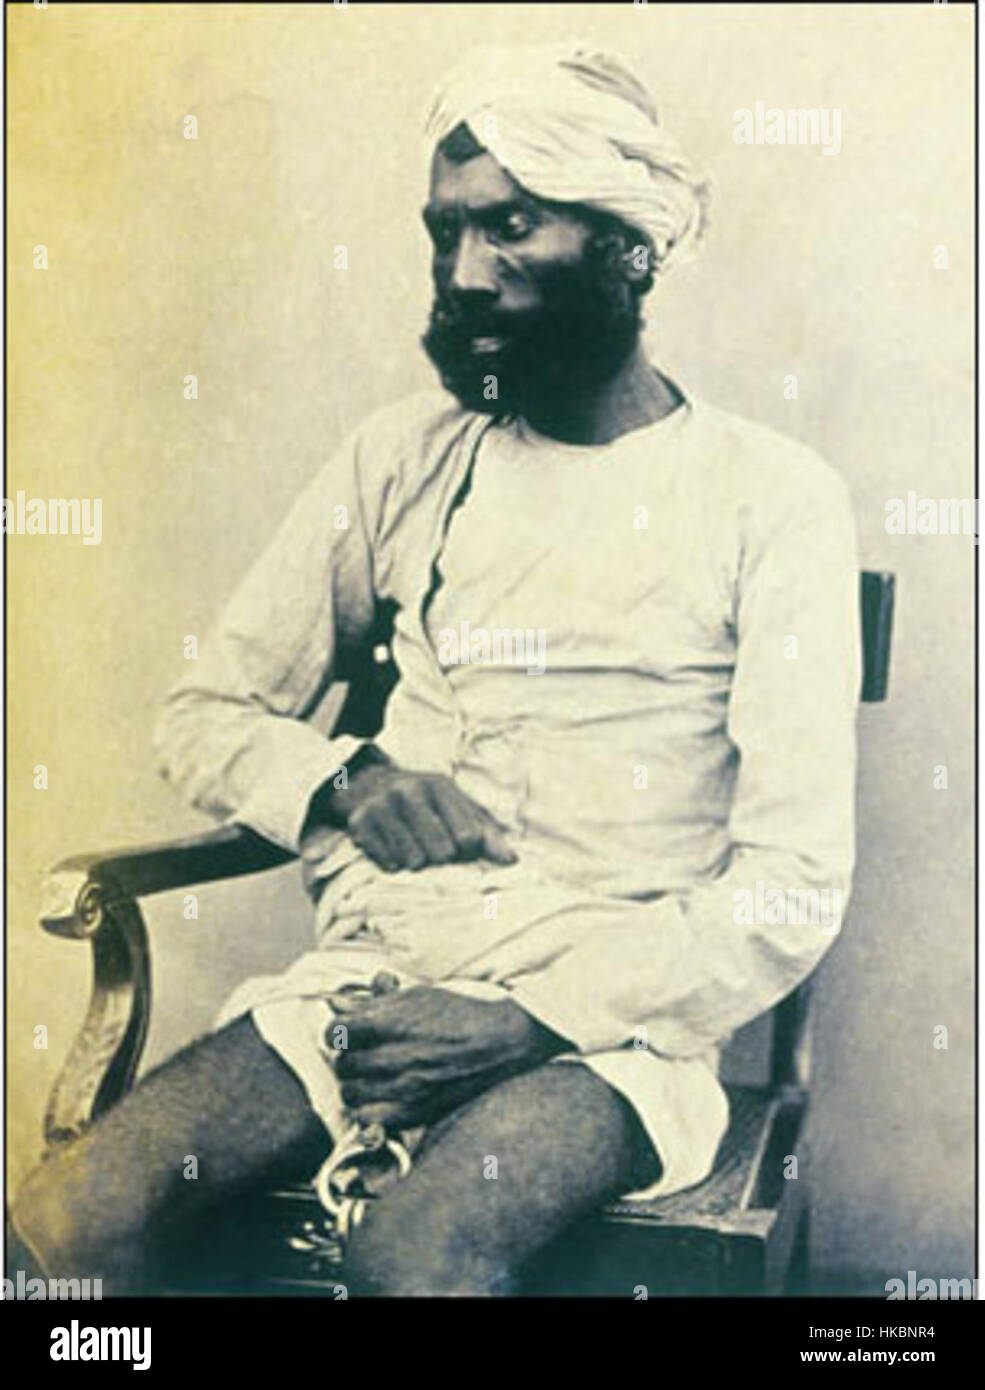 Eine handschriftliche Beschriftung identifiziert den Mann als Gungoo Mehter, die in Kanpur versucht wurde, für viele der Sati Chaura Überlebenden, darunter viele Frauen und Kinder zu töten. Er wurde verurteilt und am 8. September 1859 in Kanpur gehängt. Stockfoto